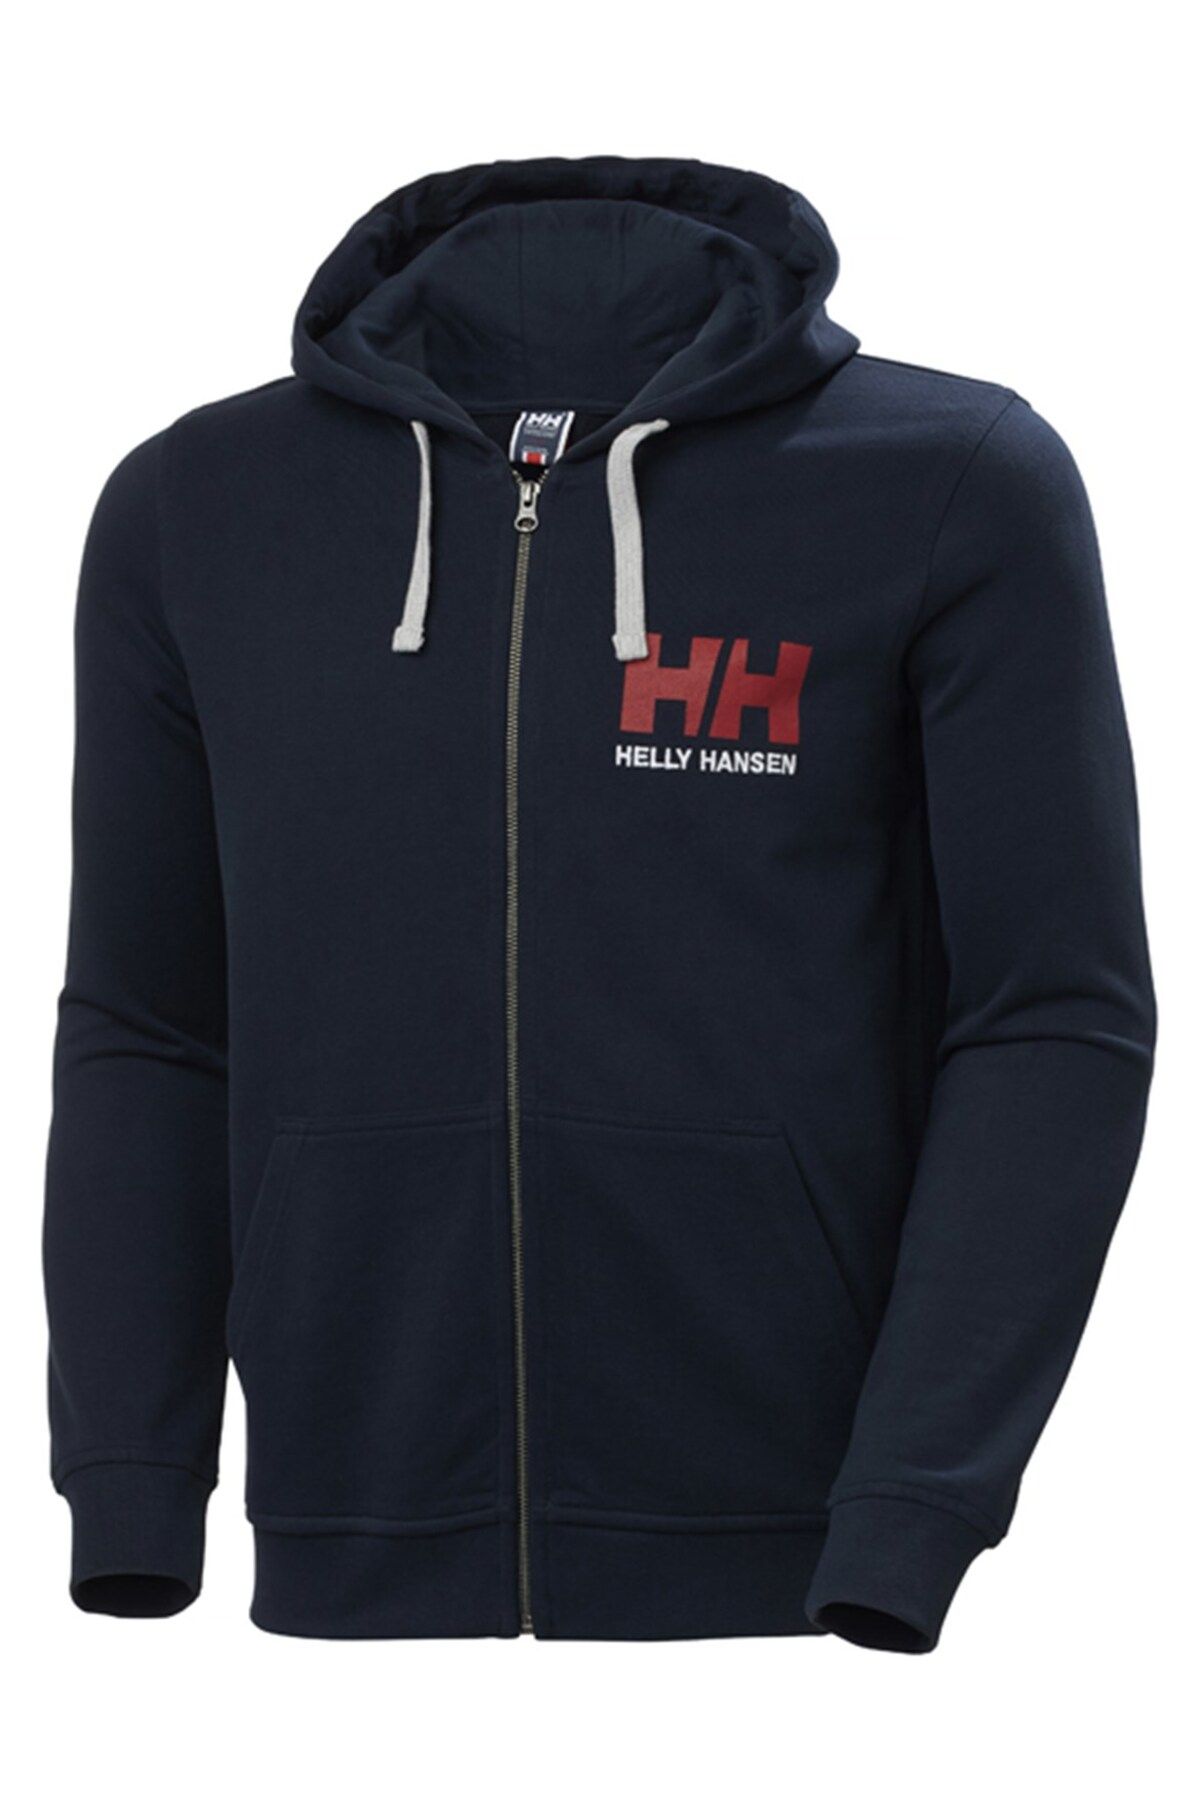 Helly Hansen Hh Hh Logo Full Zıp Hoodıe